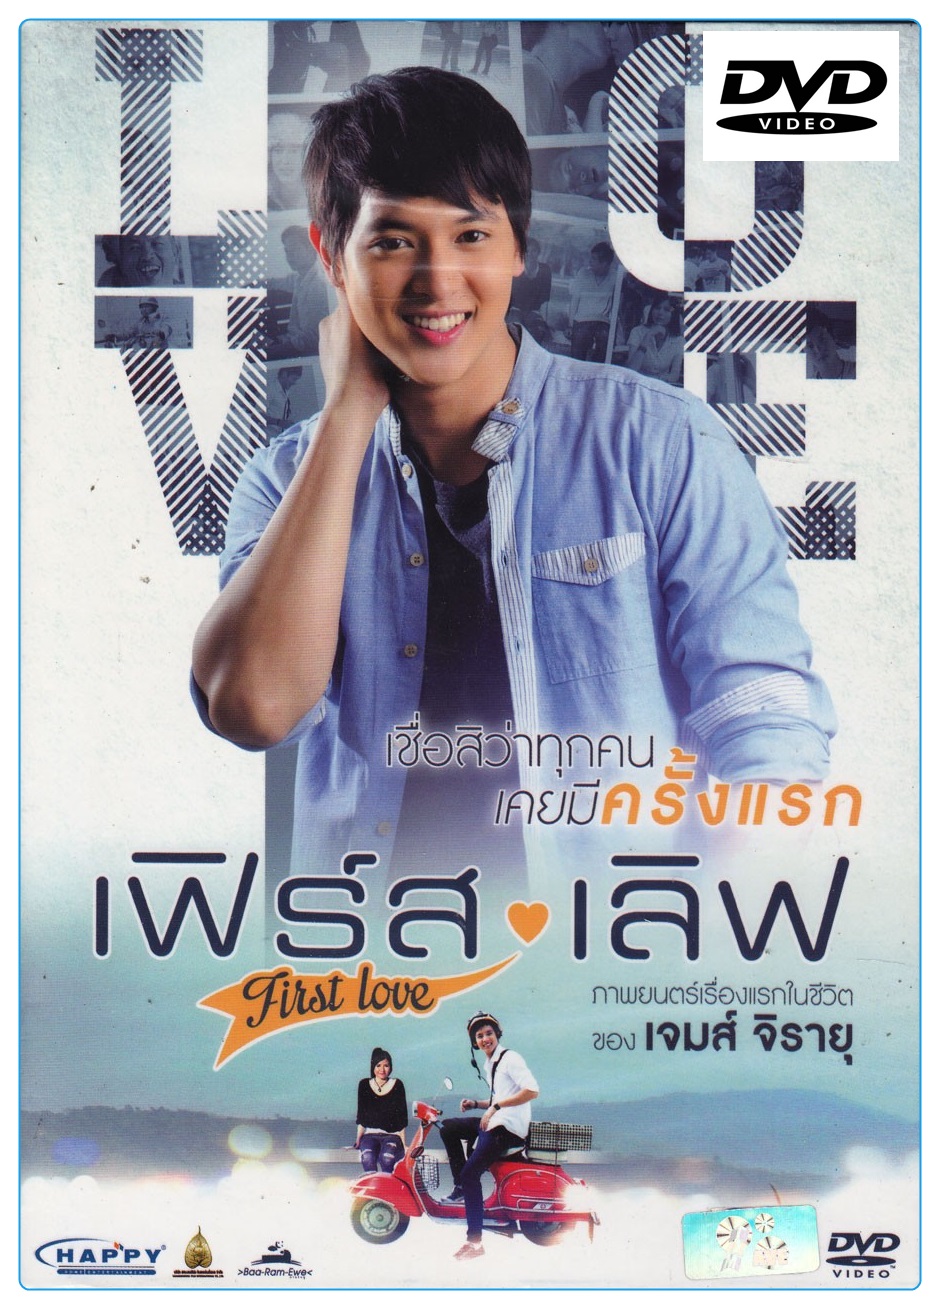 [แผ่นดีวีดี] First Love เฟิร์ส เลิฟ (Thai Movie) (DVD)